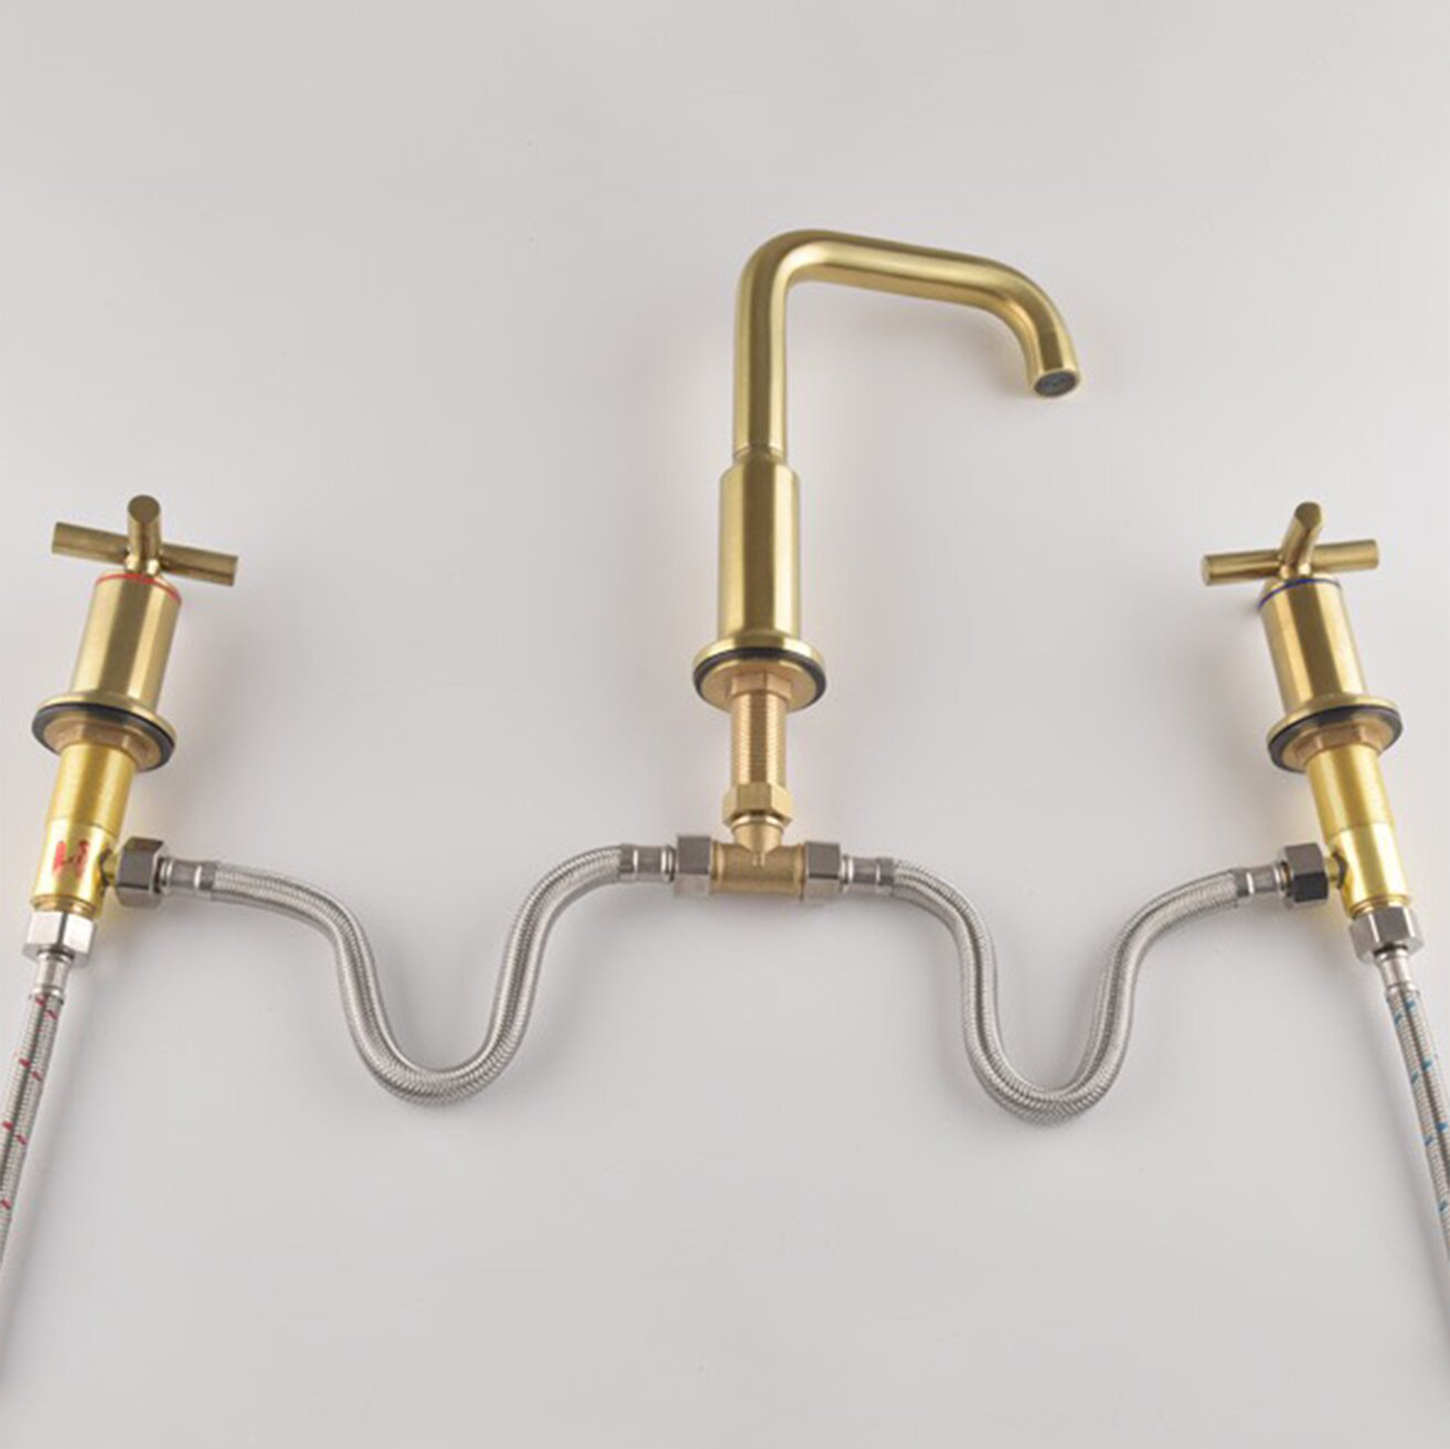 Современный UPC WRAS 8-дюймовый смеситель для раковины с двойной ручкой из матового золота для ванной комнаты